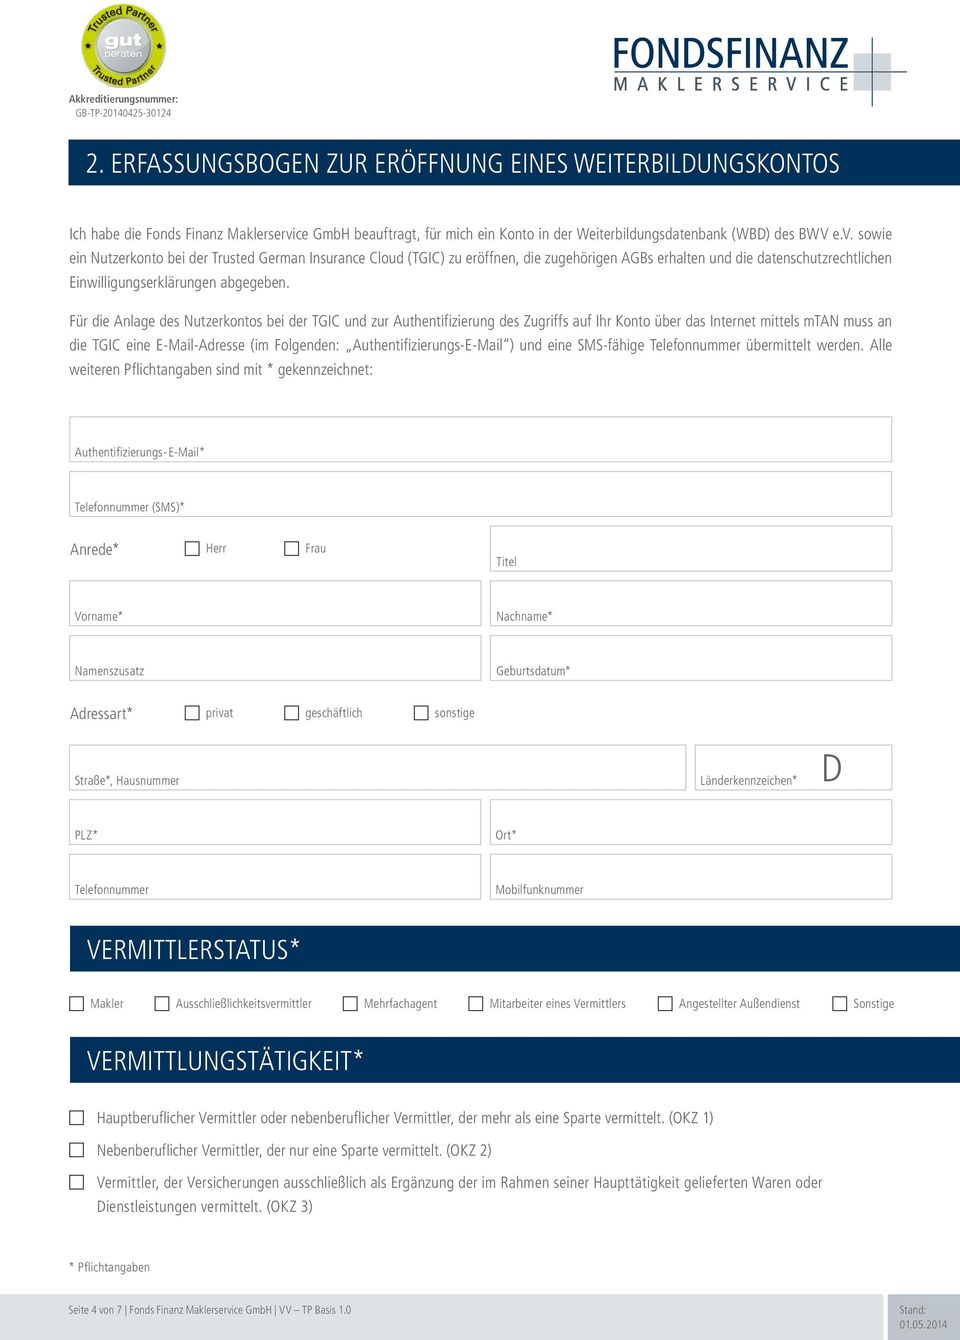 ce GmbH beauftragt, für mich ein Konto in der Weiterbildungsdatenbank (WBD) des BWV e.v.